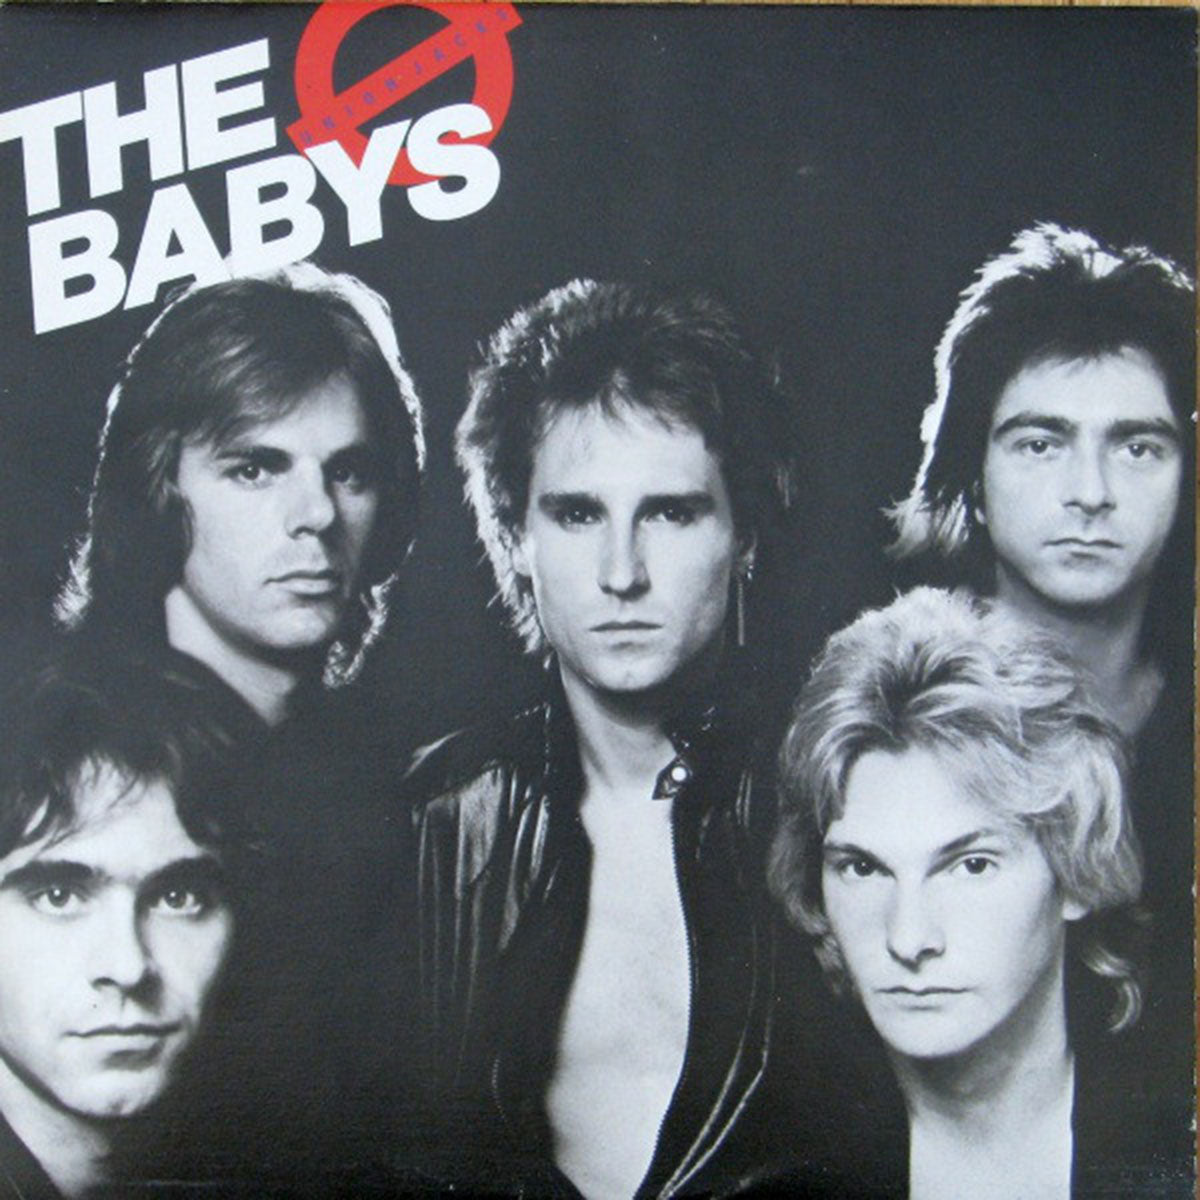 The Babys – Union Jacks - 1980